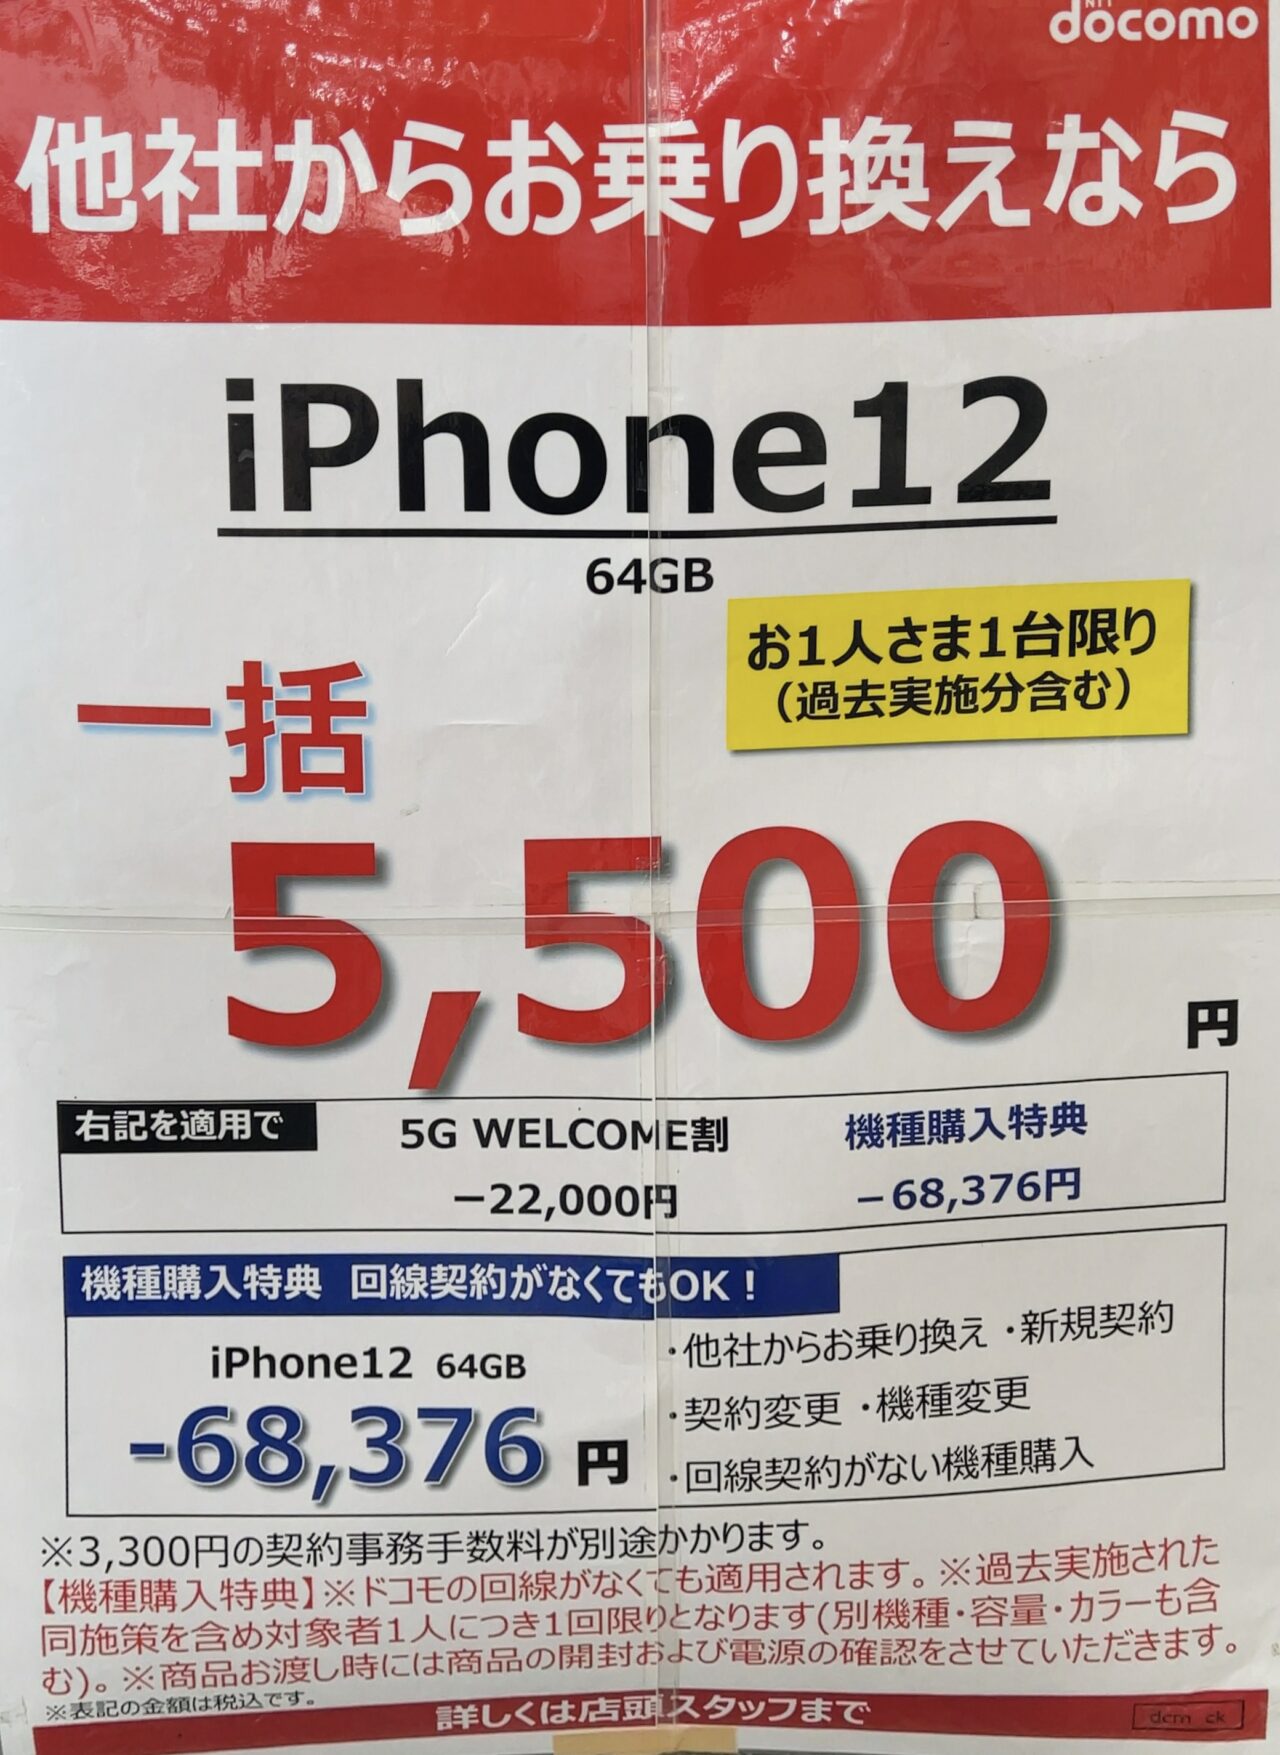 5月もドコモショップでiPhone 12の64GBがMNPで一括5,500円、機種変更や 